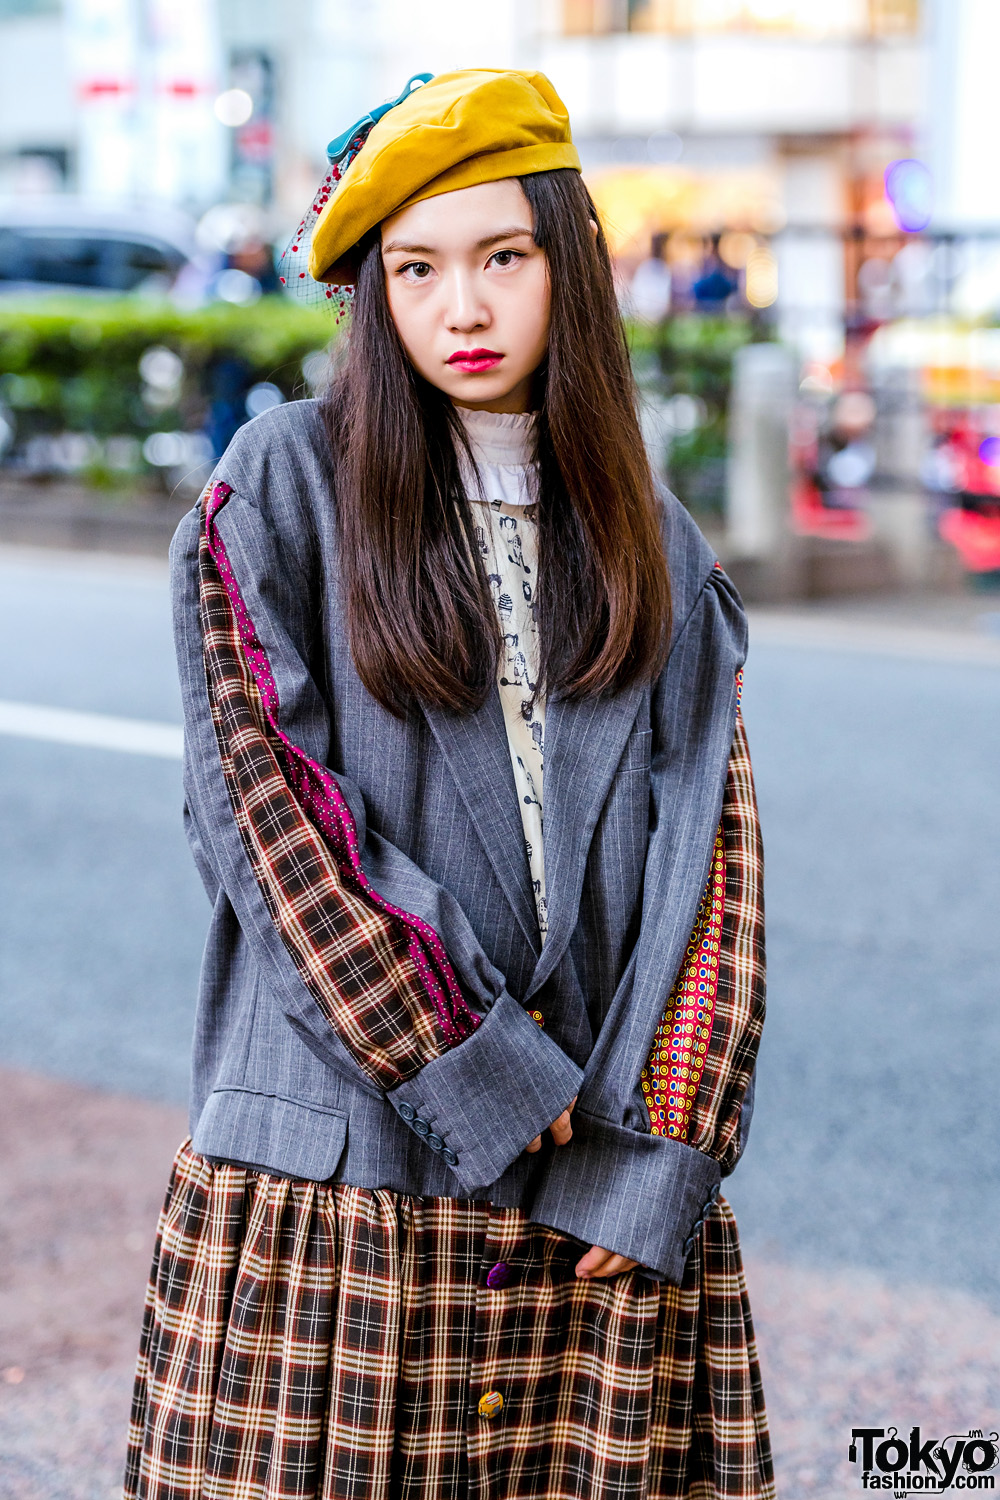 HEIHEI Harajuku Girls in Plaid Streetwear Styles w/ Blazer, Plaid Skirt ...